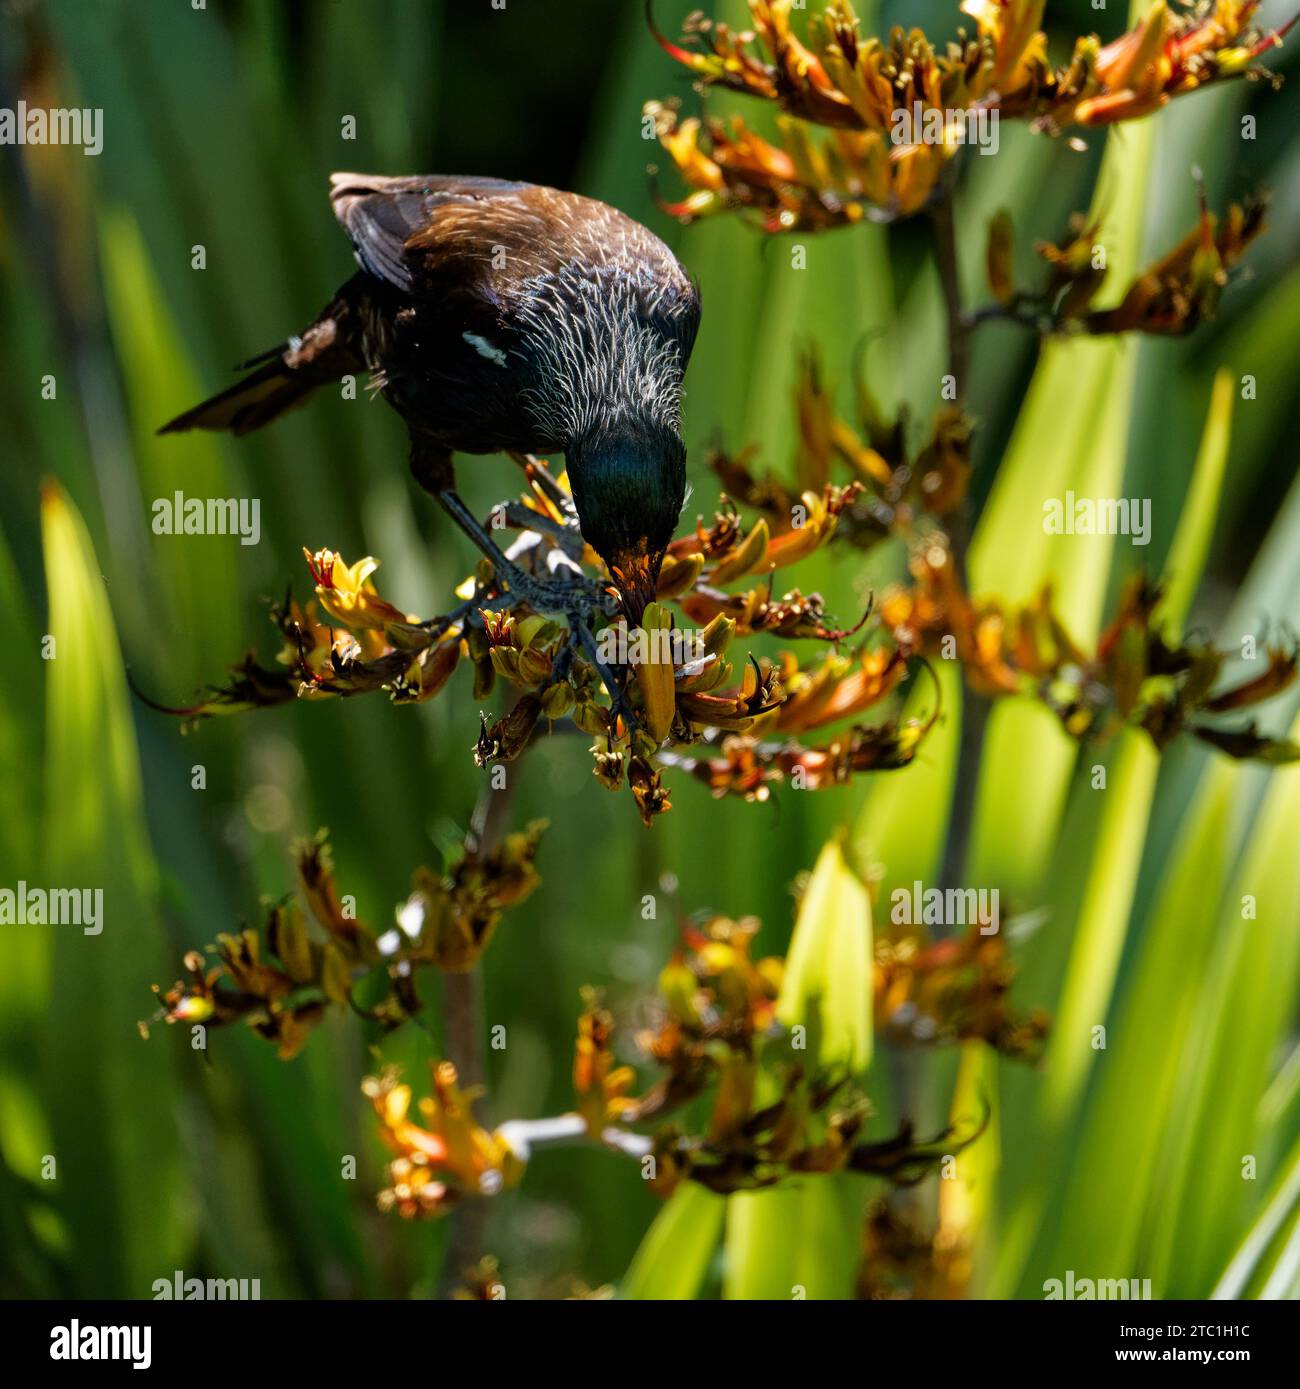 Un Tui, passereau endémique de Nouvelle-Zélande, se nourrissant de nectar de lin. La fleur étamine déposant du pollen orange sur sa tête. Région de Tasman, Banque D'Images